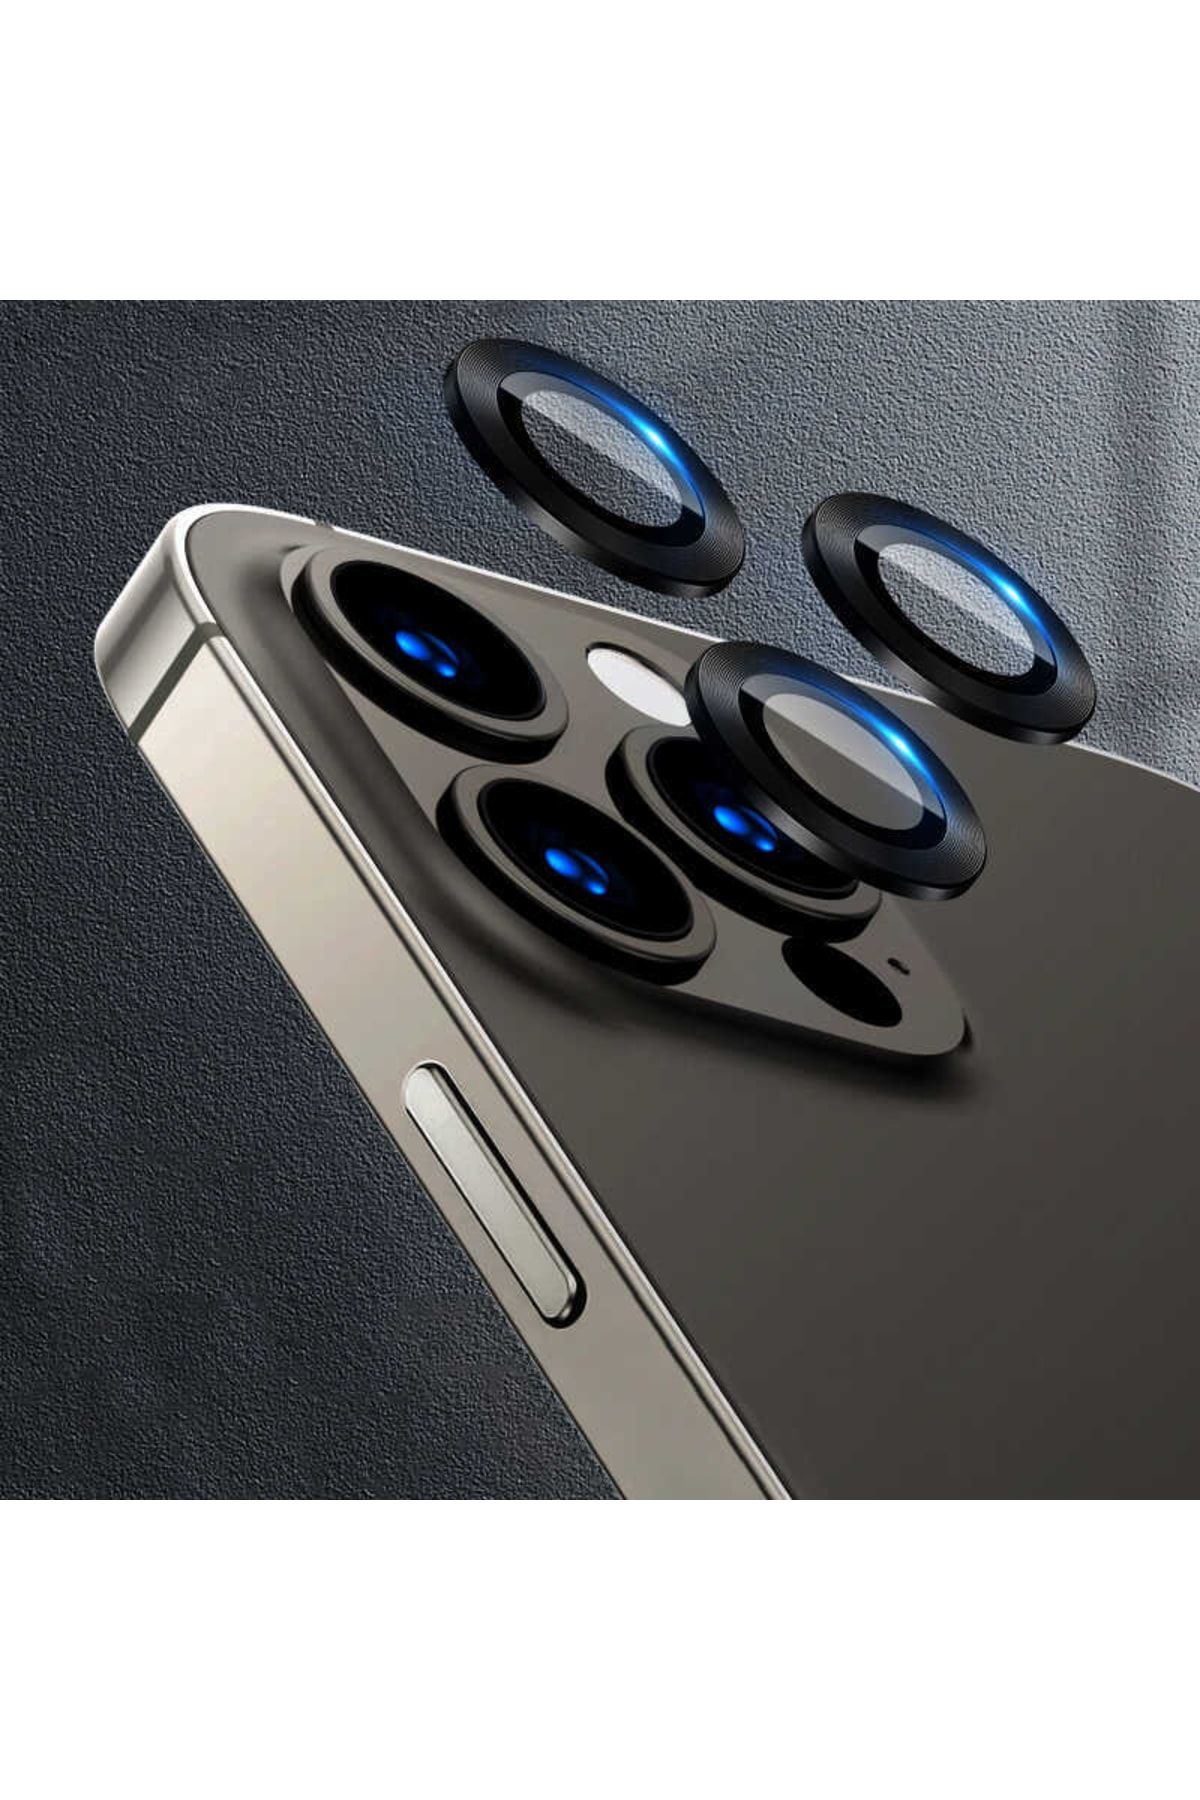 UnDePlus Uyumlu Iphone 11 Pro Max Kamera Lens Koruyucu Çerçeveli Koruyucu Cl-07